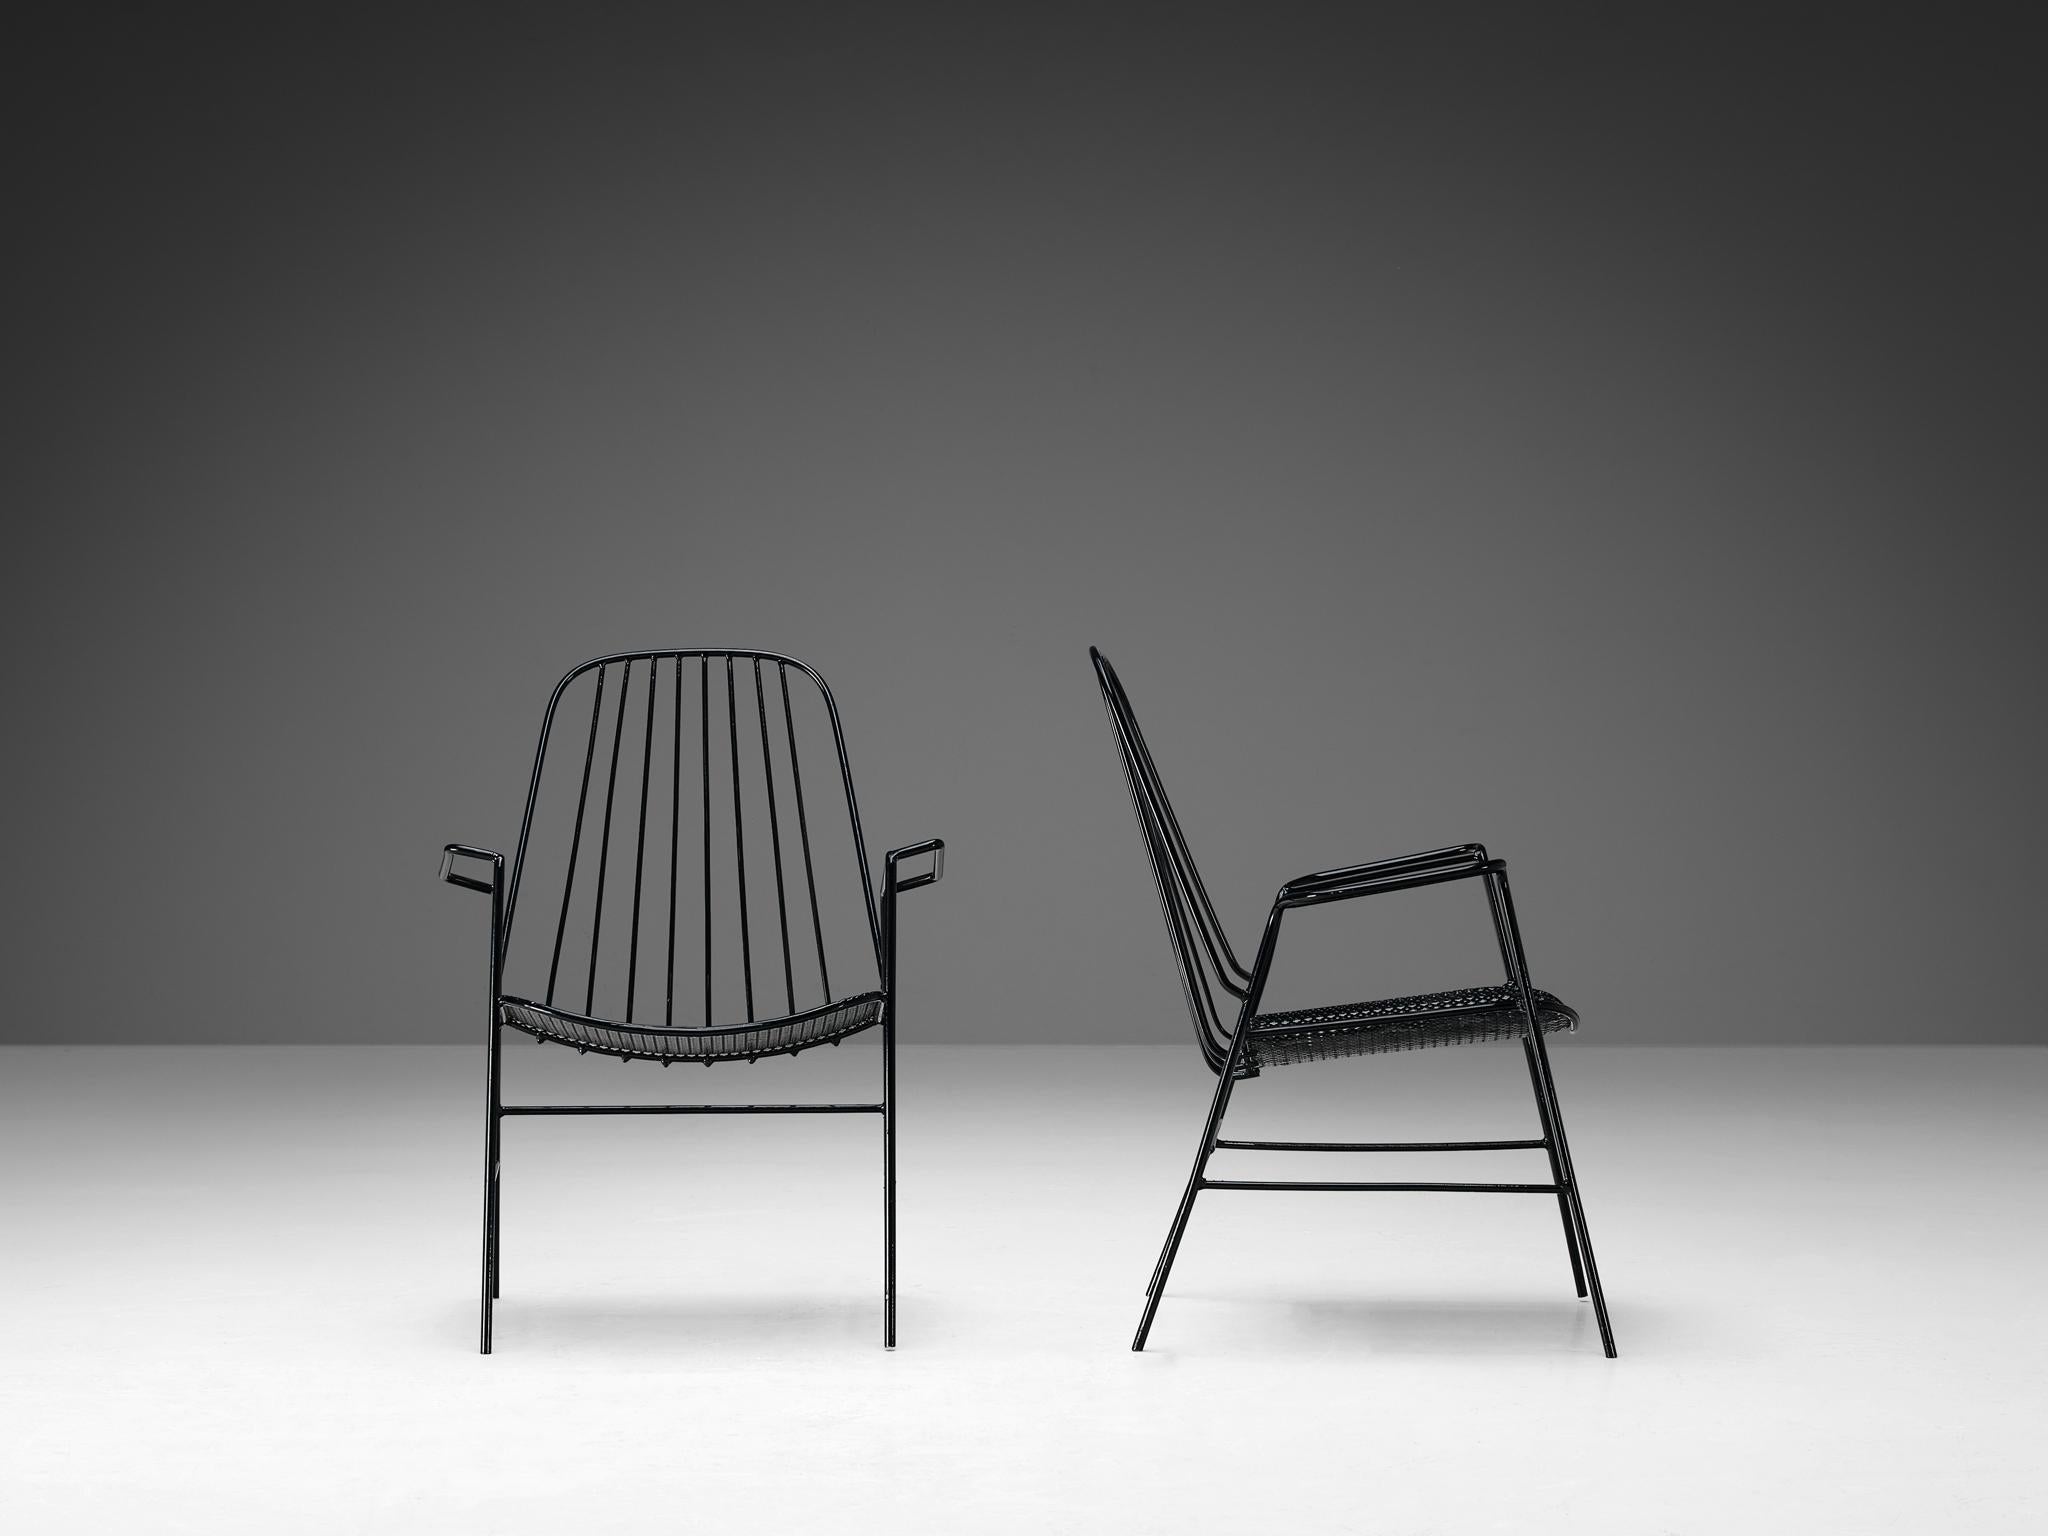 Paar Terrassensessel, Eisen lackiert, Frankreich, 1970er Jahre

Ein Paar französische Stühle, die sich durch ihr elegantes und luftiges Aussehen mit ihrem offenen Gestell und ihrer einzigartigen schwarzen Farbe auszeichnen. Für den Sitz verwendete